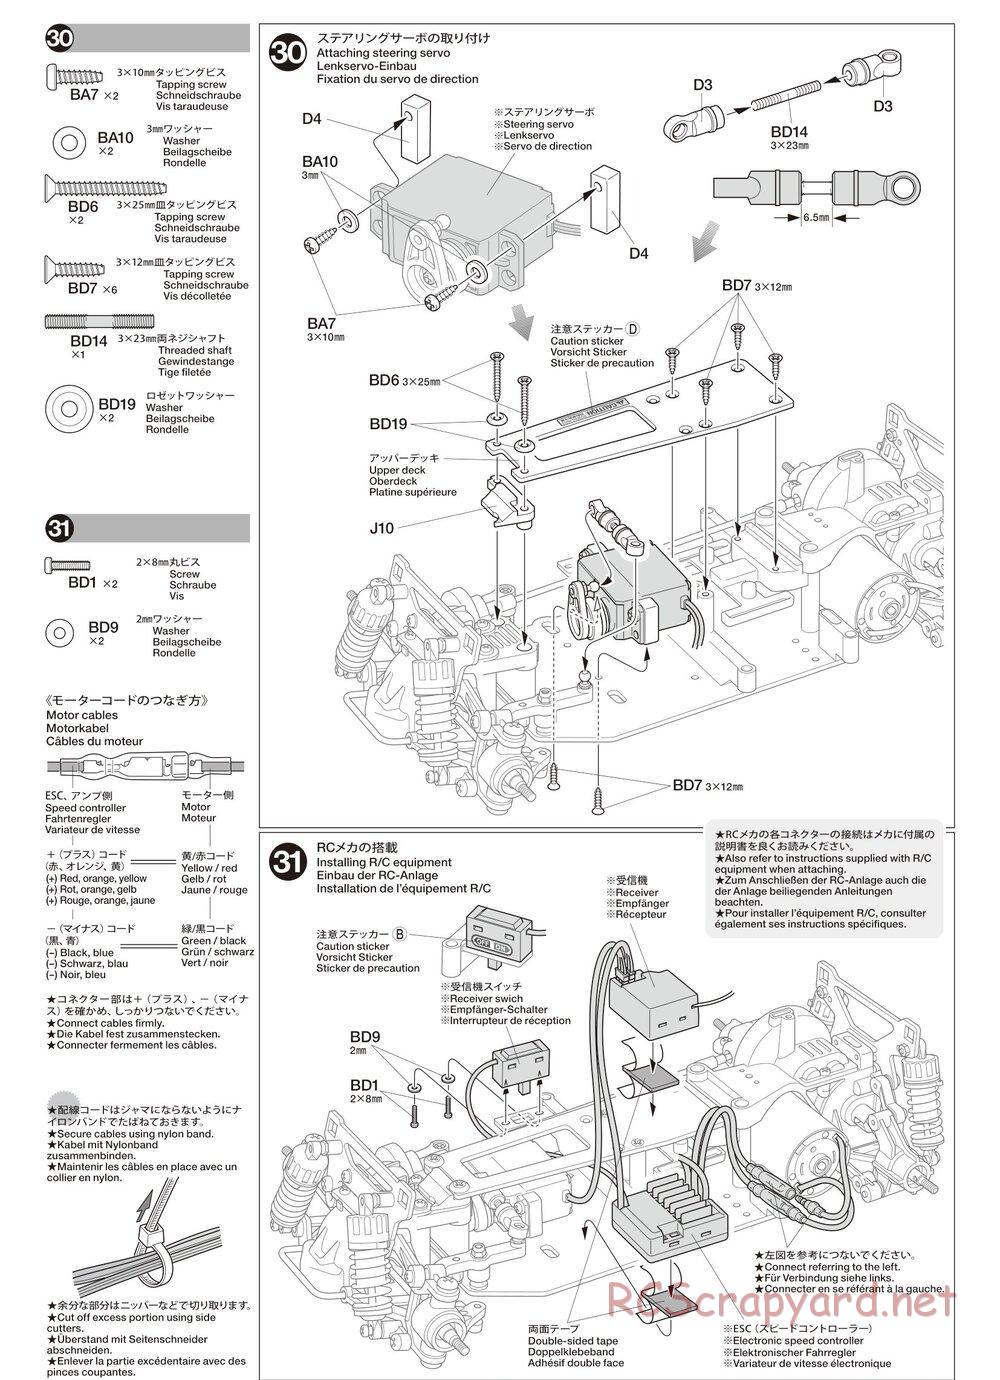 Tamiya - TA02SW Chassis - Manual - Page 15